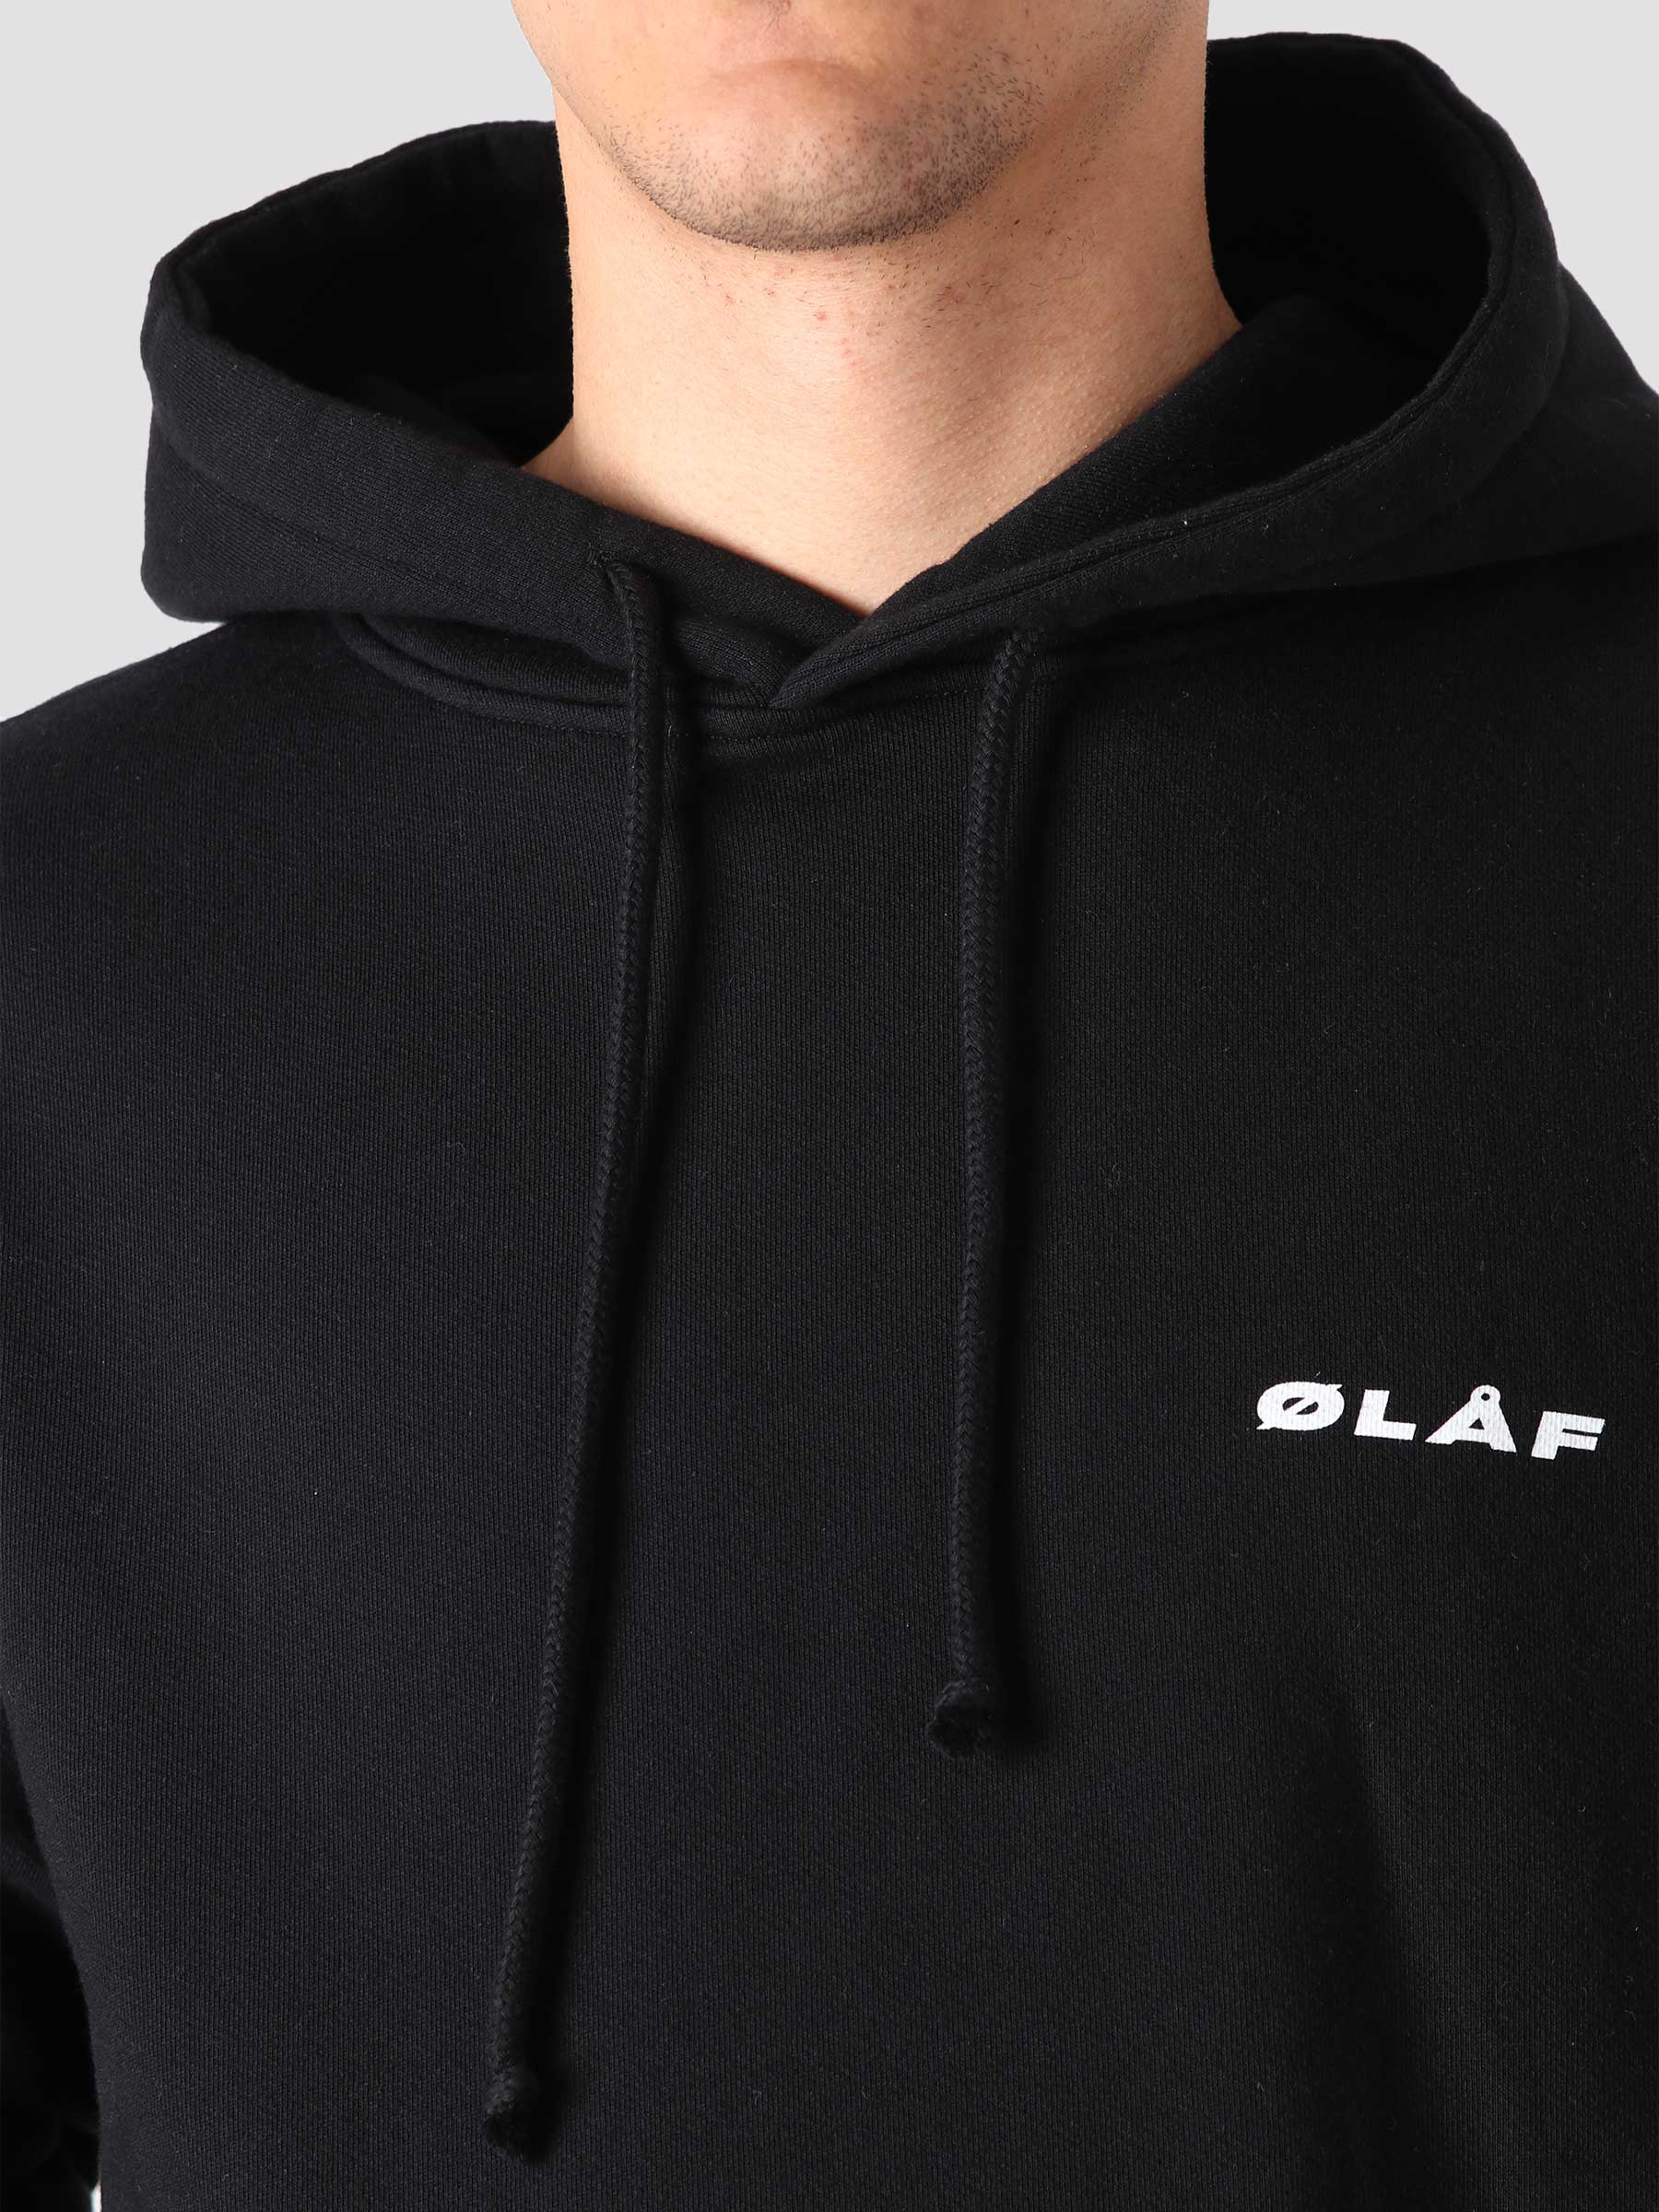 OLAF OH Uniform Hoodie